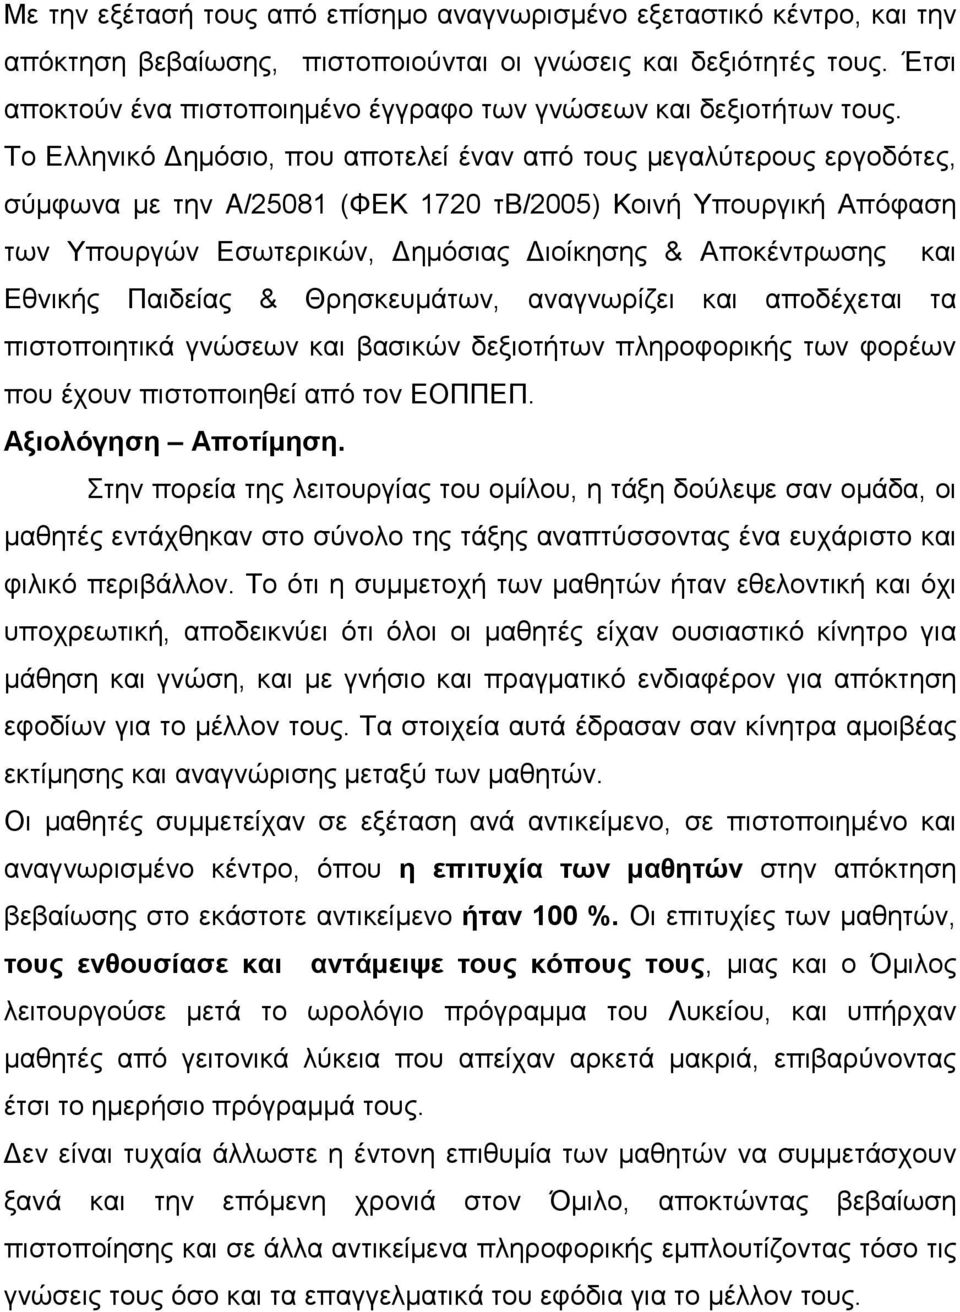 Το Ελληνικό Δημόσιο, που αποτελεί έναν από τους μεγαλύτερους εργοδότες, σύμφωνα με την A/25081 (ΦΕΚ 1720 τb/2005) Κοινή Υπουργική Απόφαση των Υπουργών Εσωτερικών, Δημόσιας Διοίκησης & Αποκέντρωσης